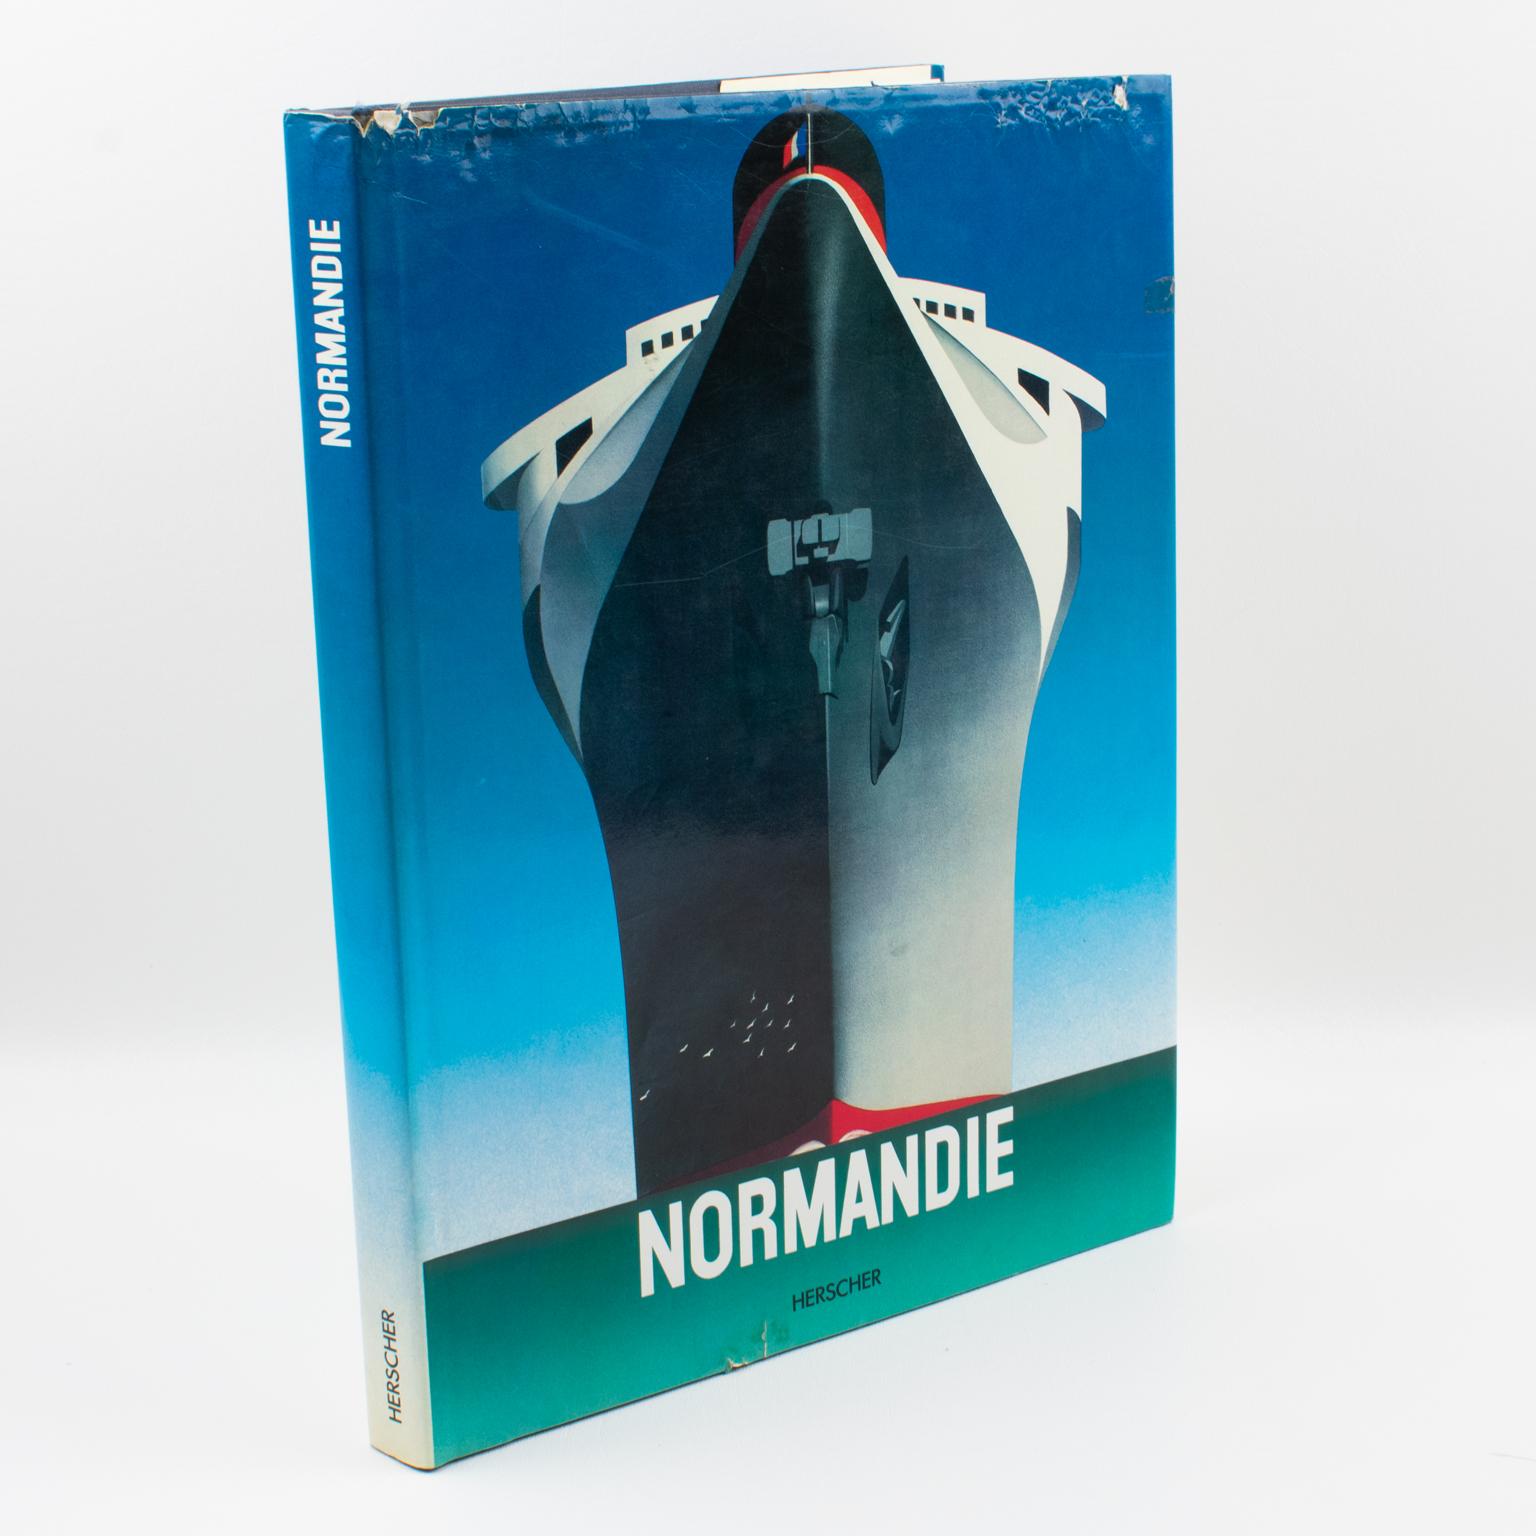 Normandie, L'Epopé du Géant des Mers, (Die Normandie, das Epos des Giganten der Meere), französisches Buch von Bruno Foucart, 1985.
Die Normandie, ein französisches Qualitätsschiff, das auch Floating Exhibition oder Steel Monster genannt wurde,